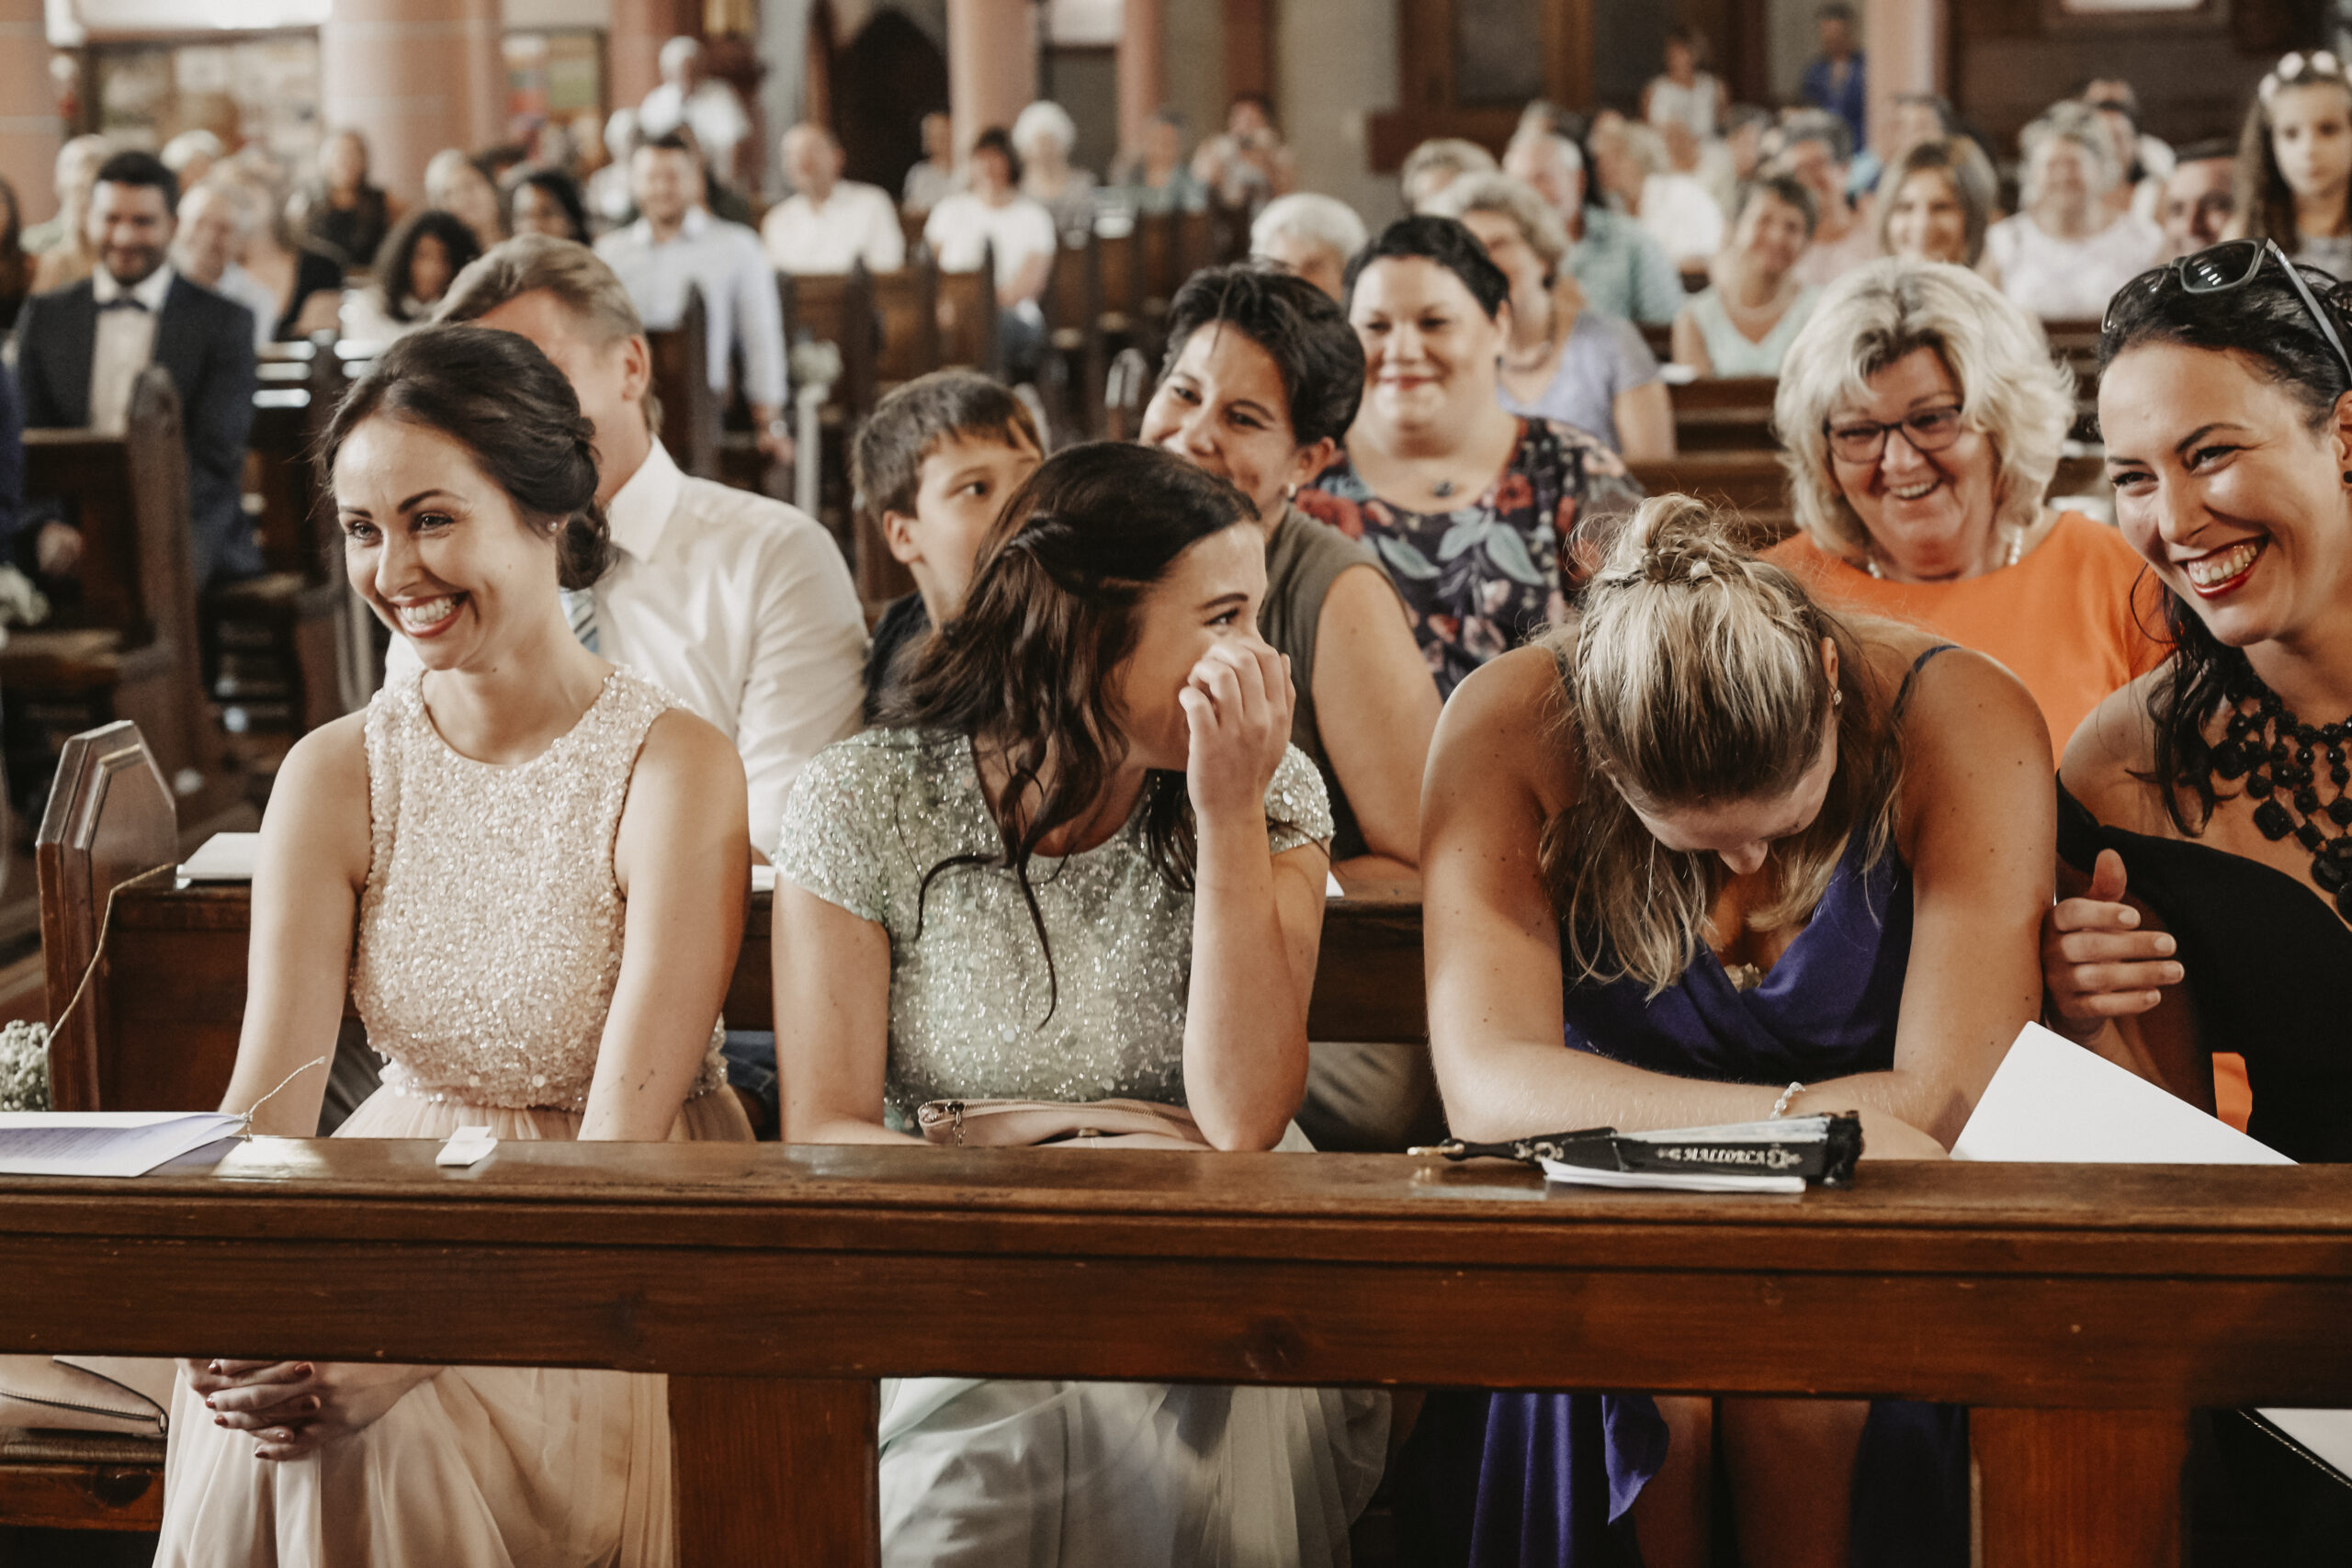 Hochzeitsgäste lachen sich in der Kirche kaputt in der ersten Reihe. Vier Frauen in schönen Kleidern die lachen.